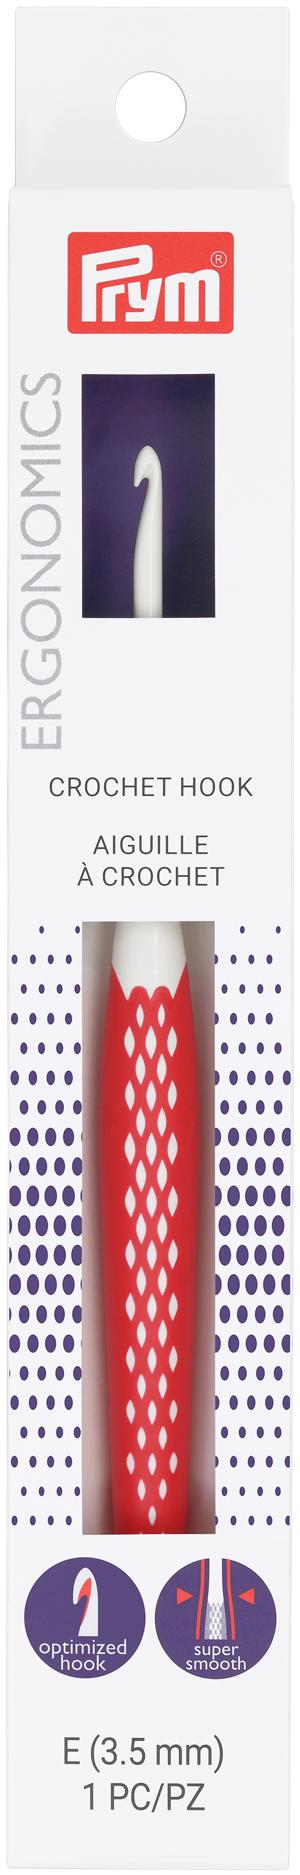 Prym Crochet Hooks